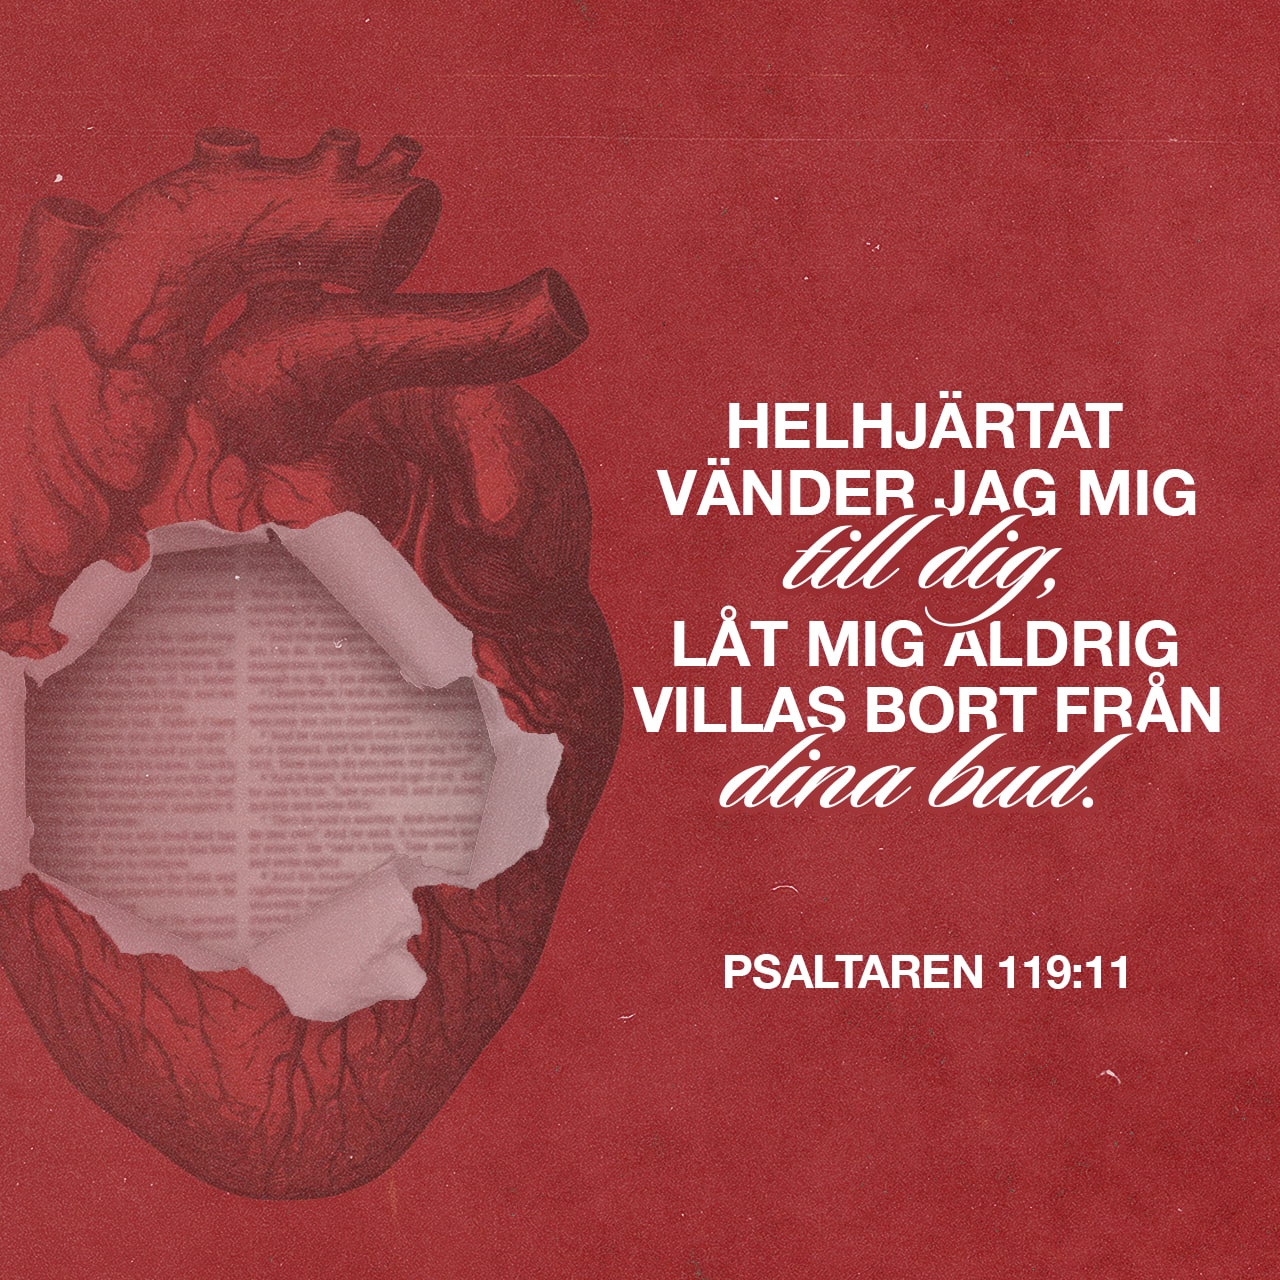 Psaltaren 119:11 - Jag gömmer ditt ord i mitt hjärta
för att jag inte ska synda mot dig.